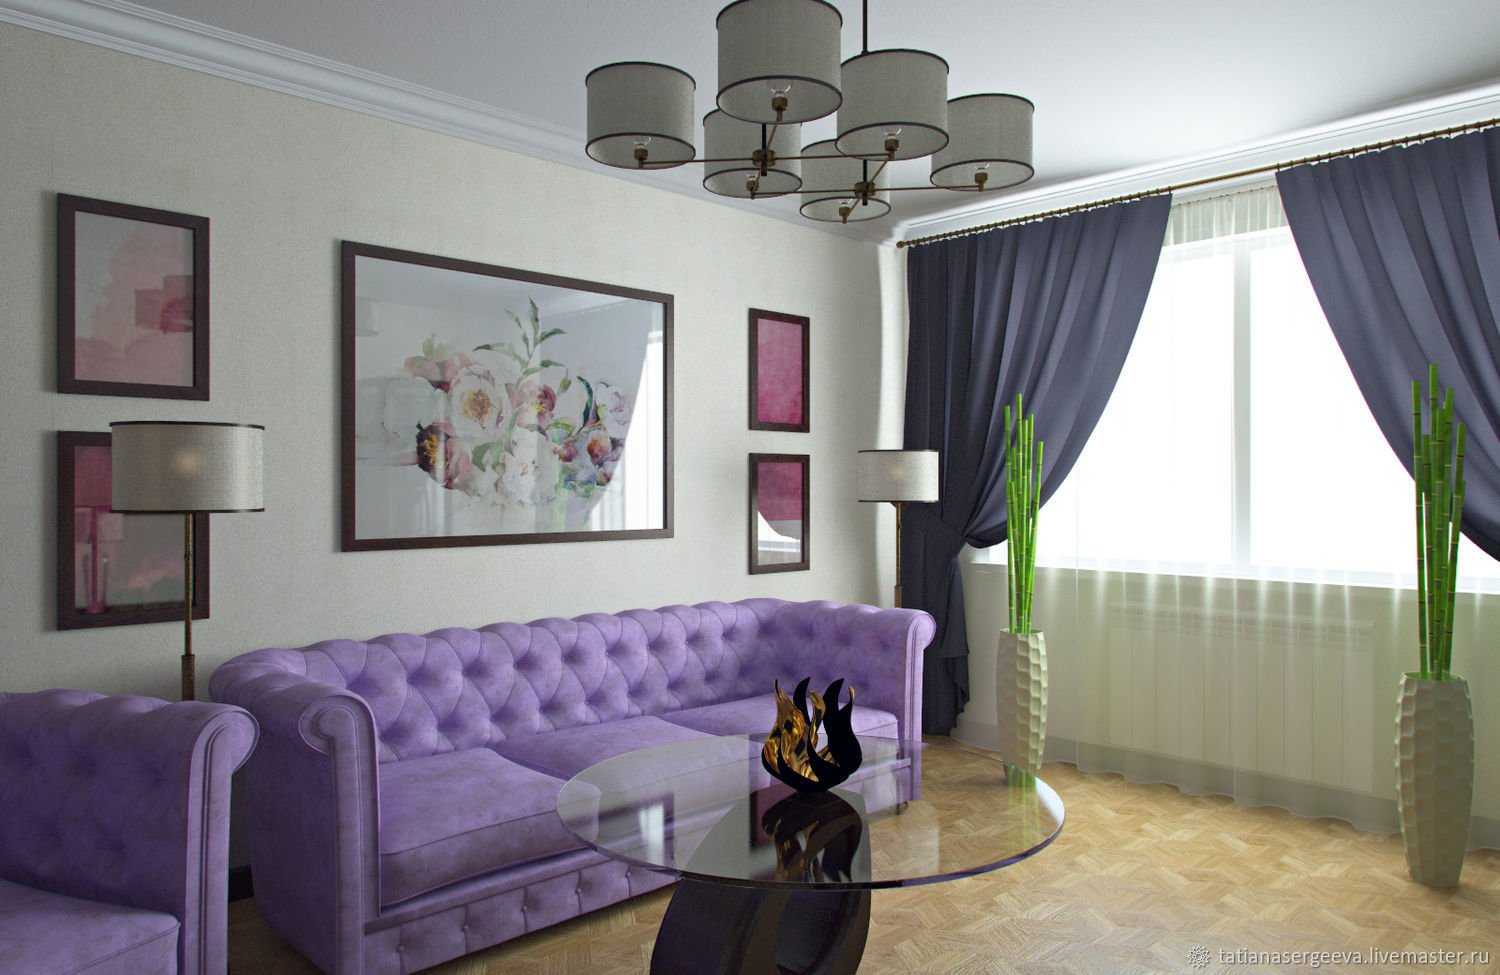 Фиолетовый диван в интерьере — особенности цвета и правила сочетания